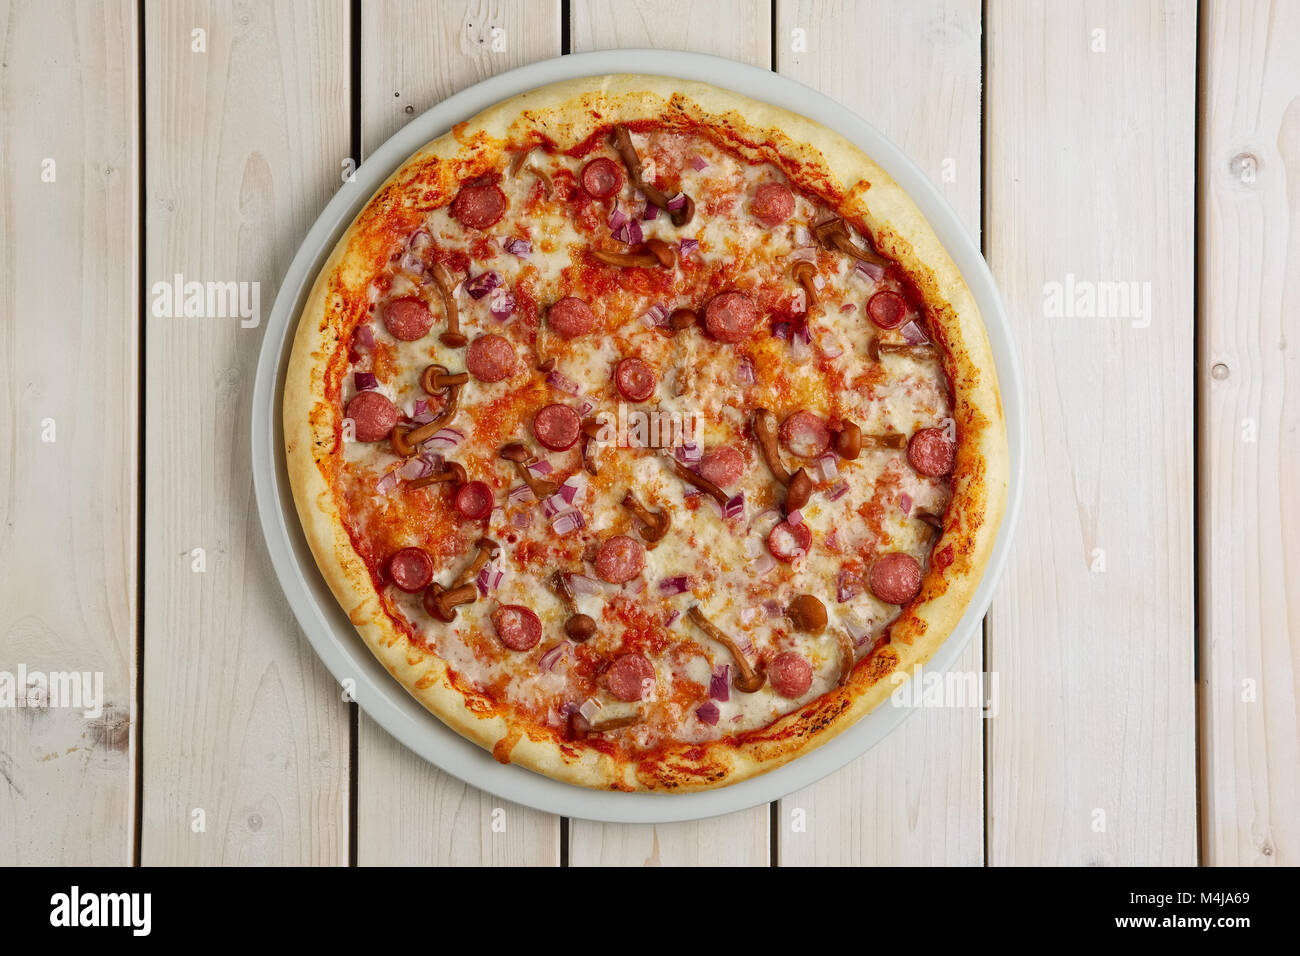 Vue de dessus de la pizza avec de la saucisse et toon miel Banque D'Images